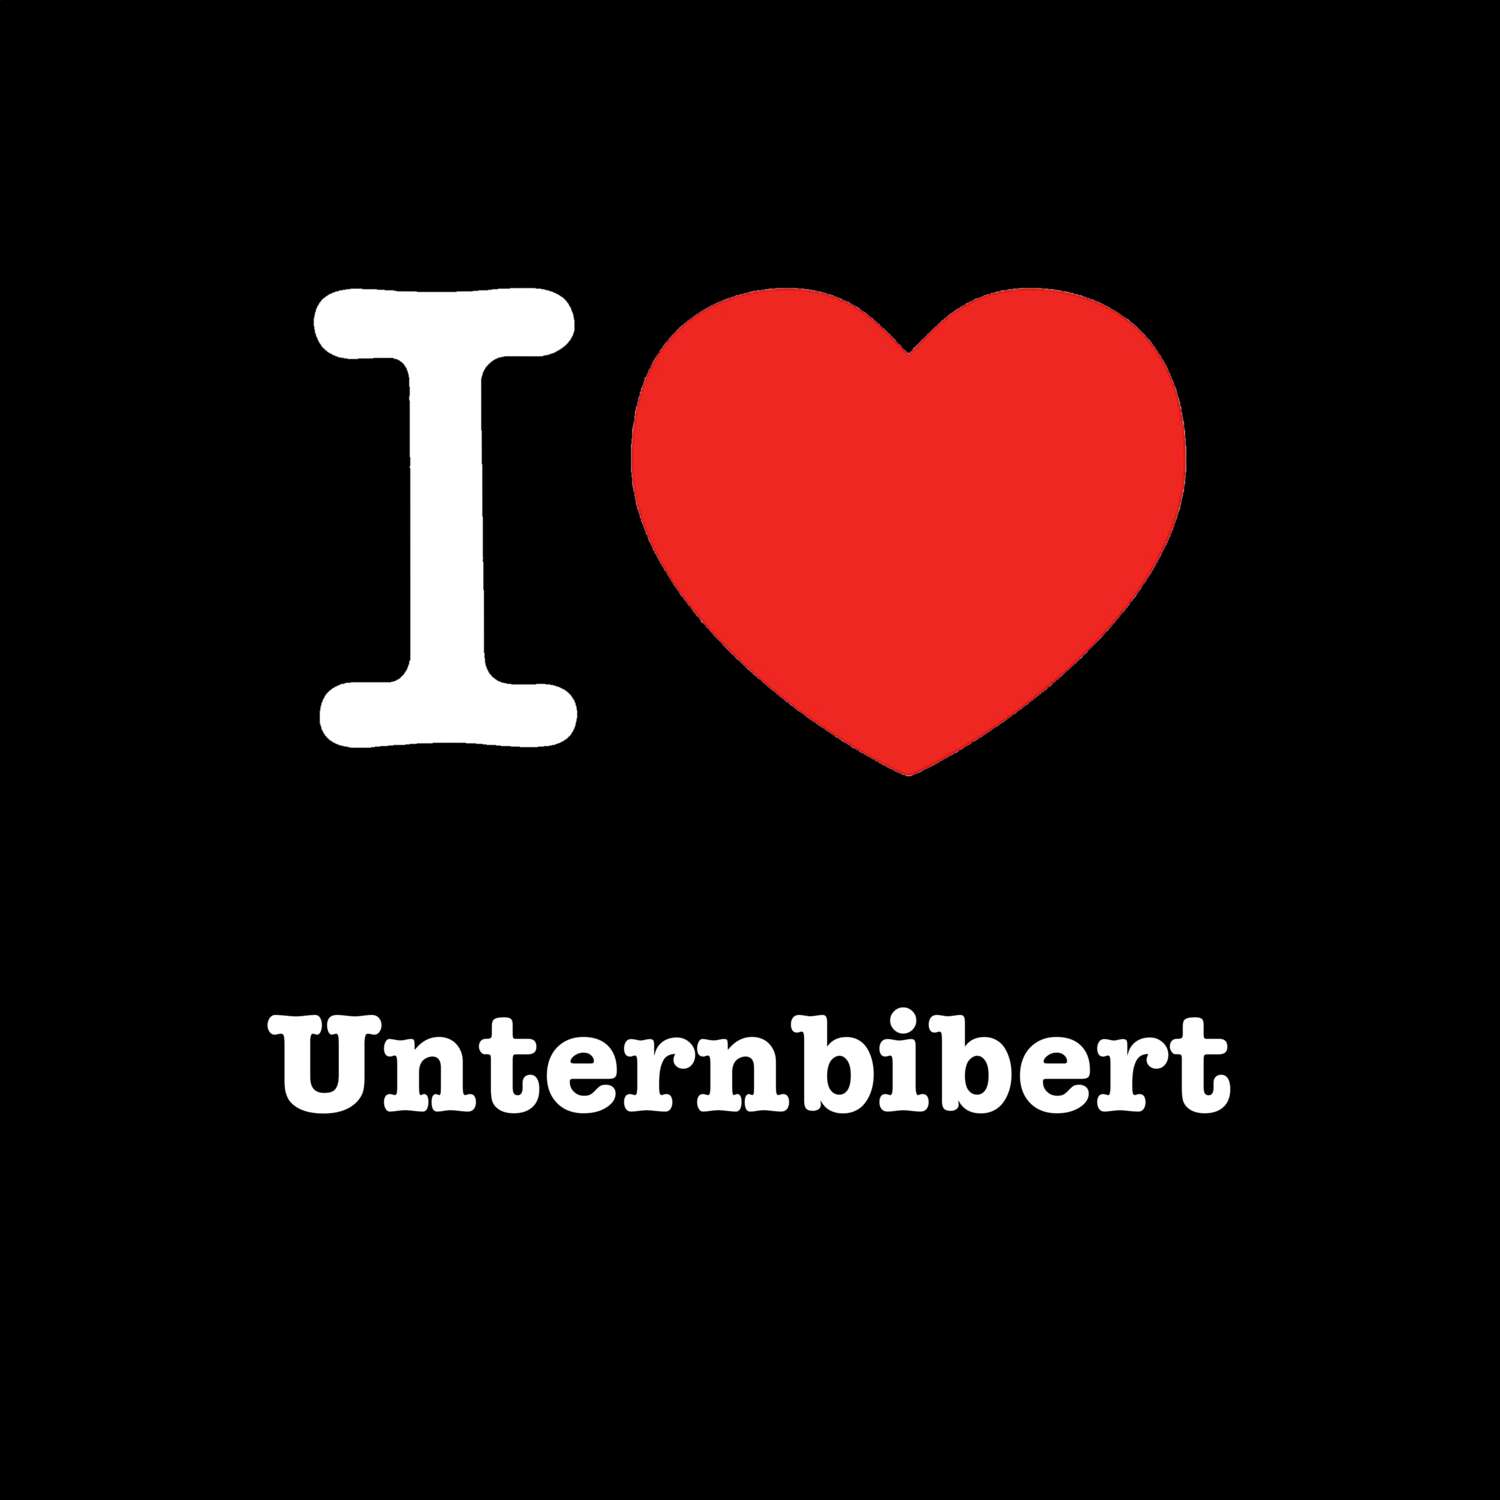 Unternbibert T-Shirt »I love«